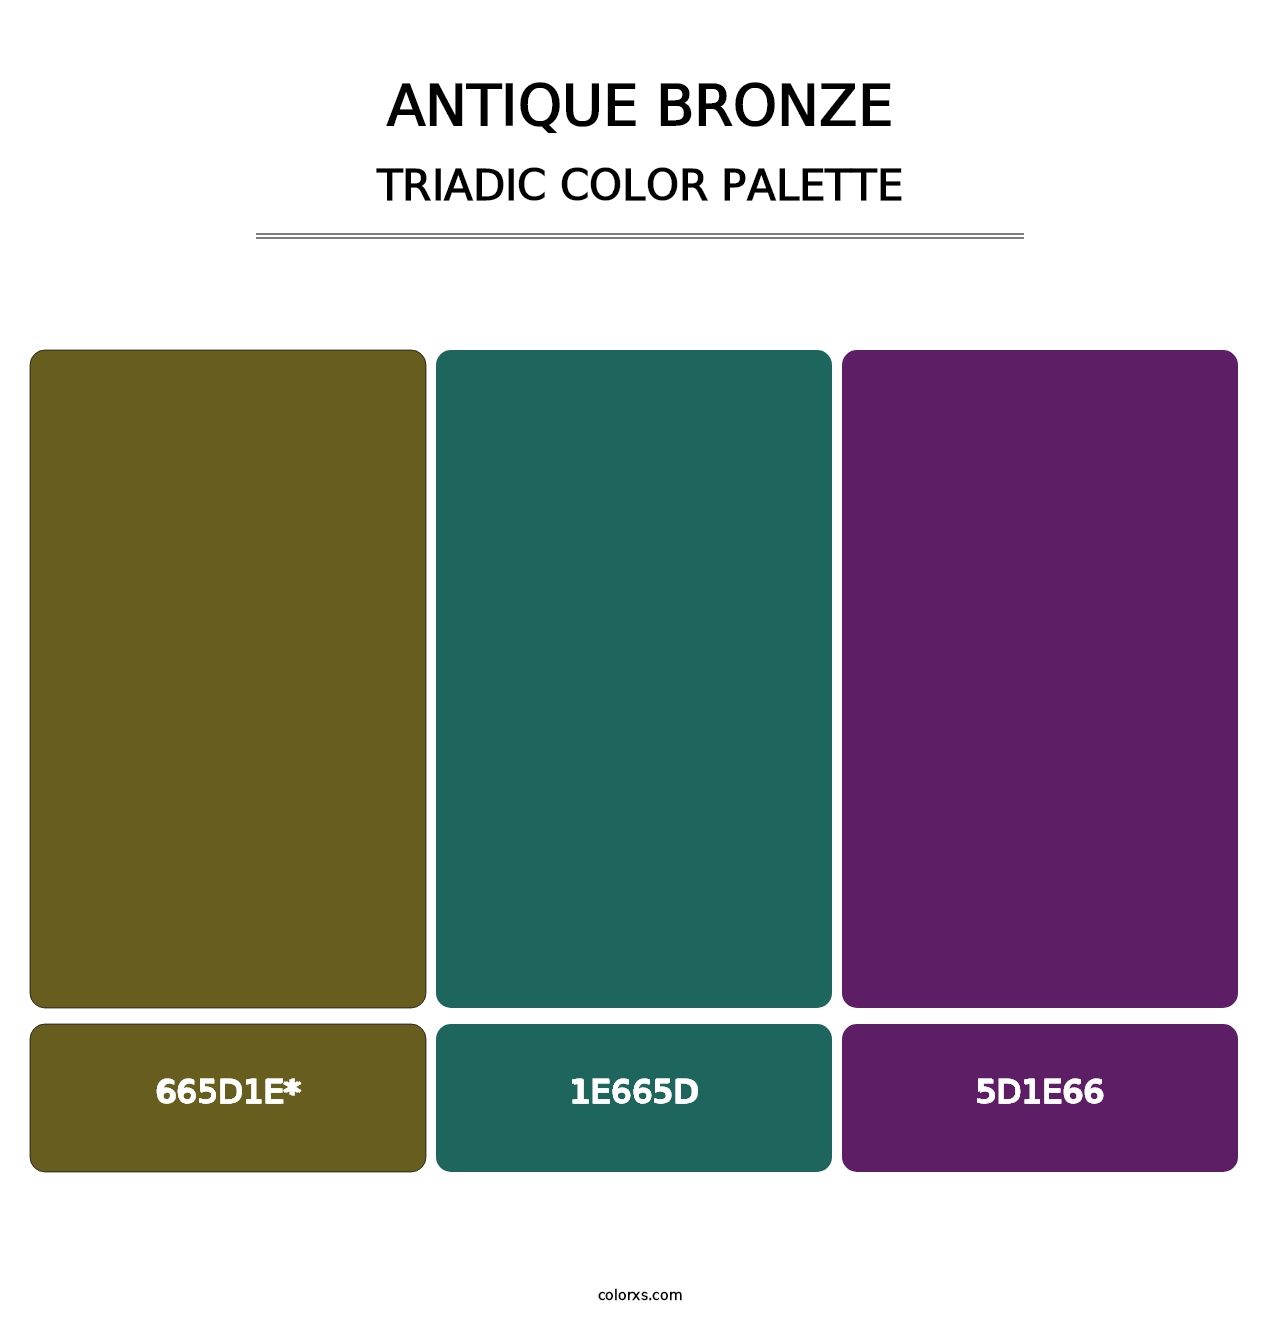 Antique Bronze - Triadic Color Palette